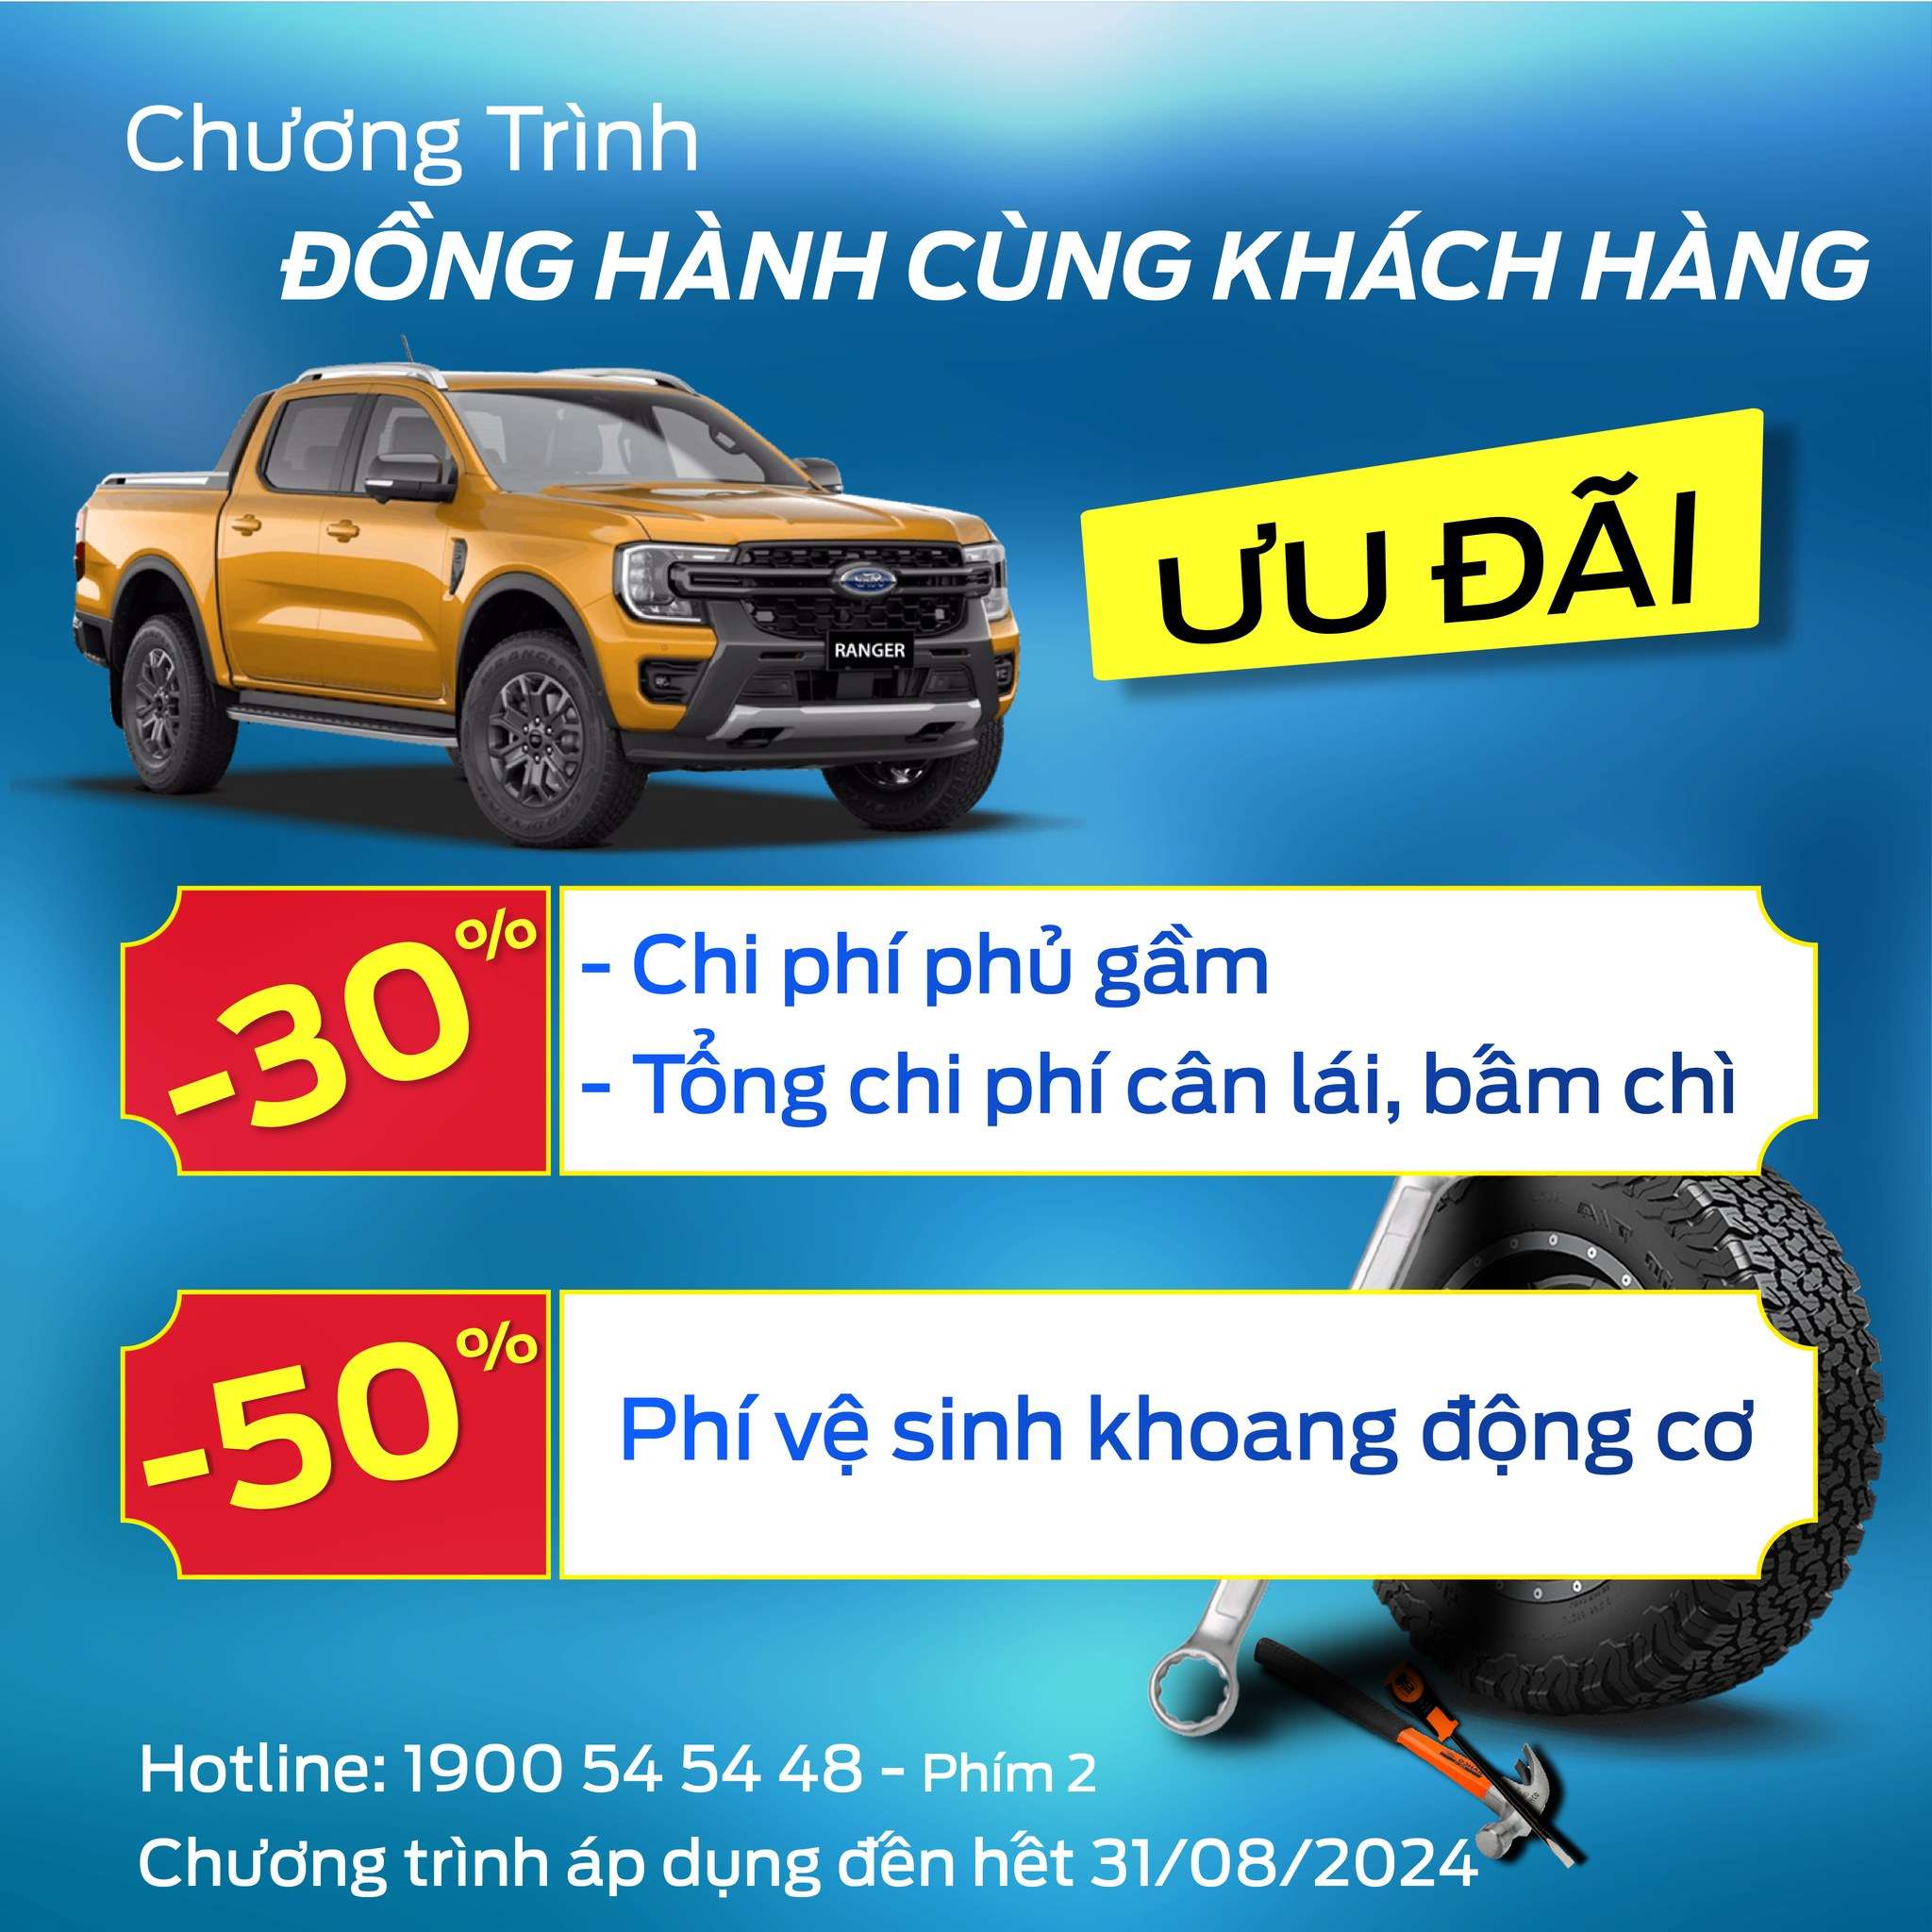 Bình Thuận Ford Đồng hành cùng khách hàng